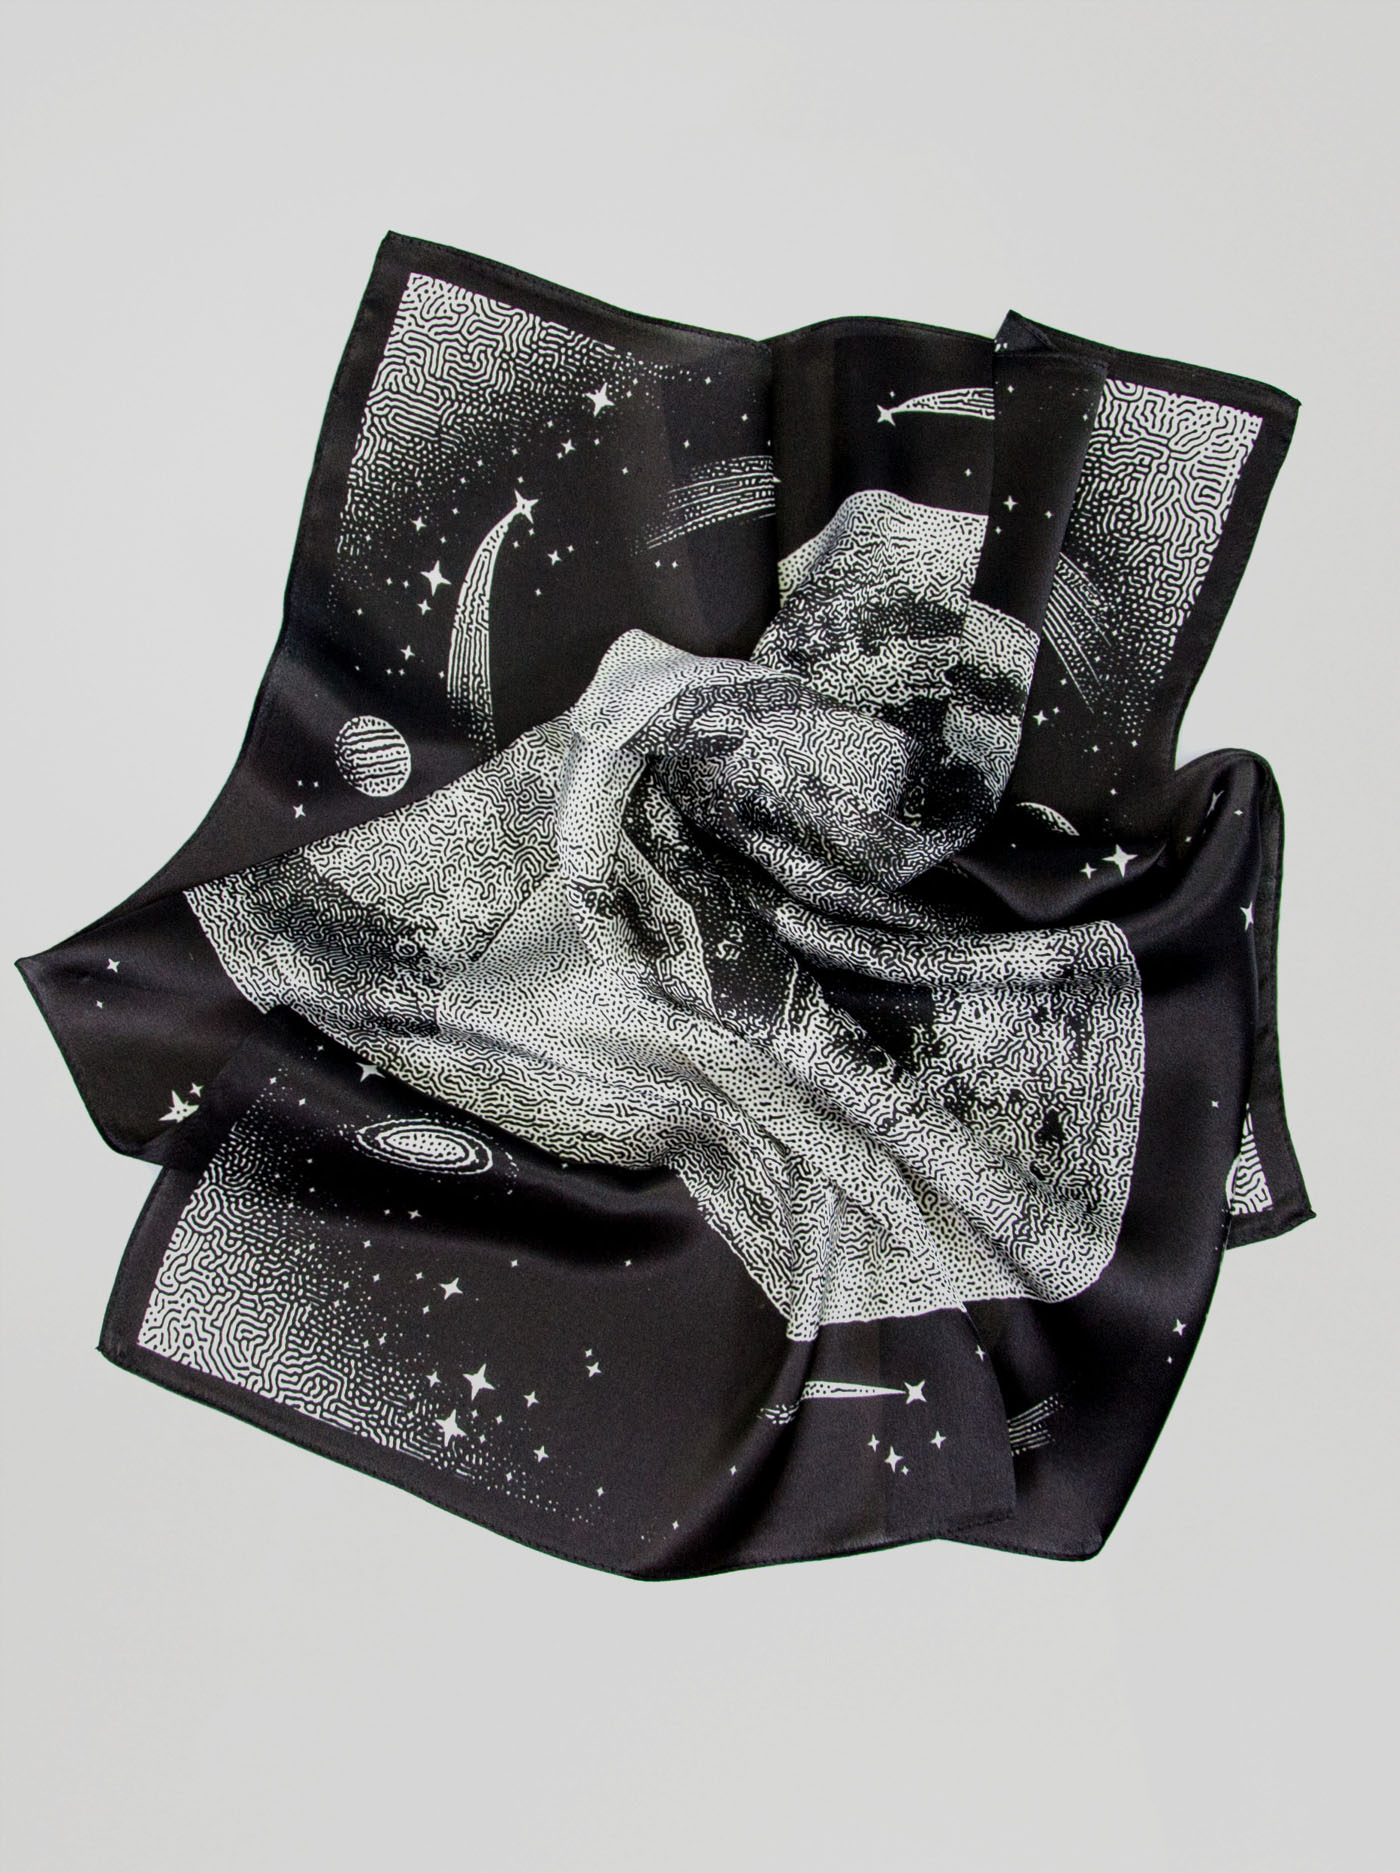 Apaszka z jedwabiu  106 cm x 106 cm z motywem kosmosu zdjęcie 2